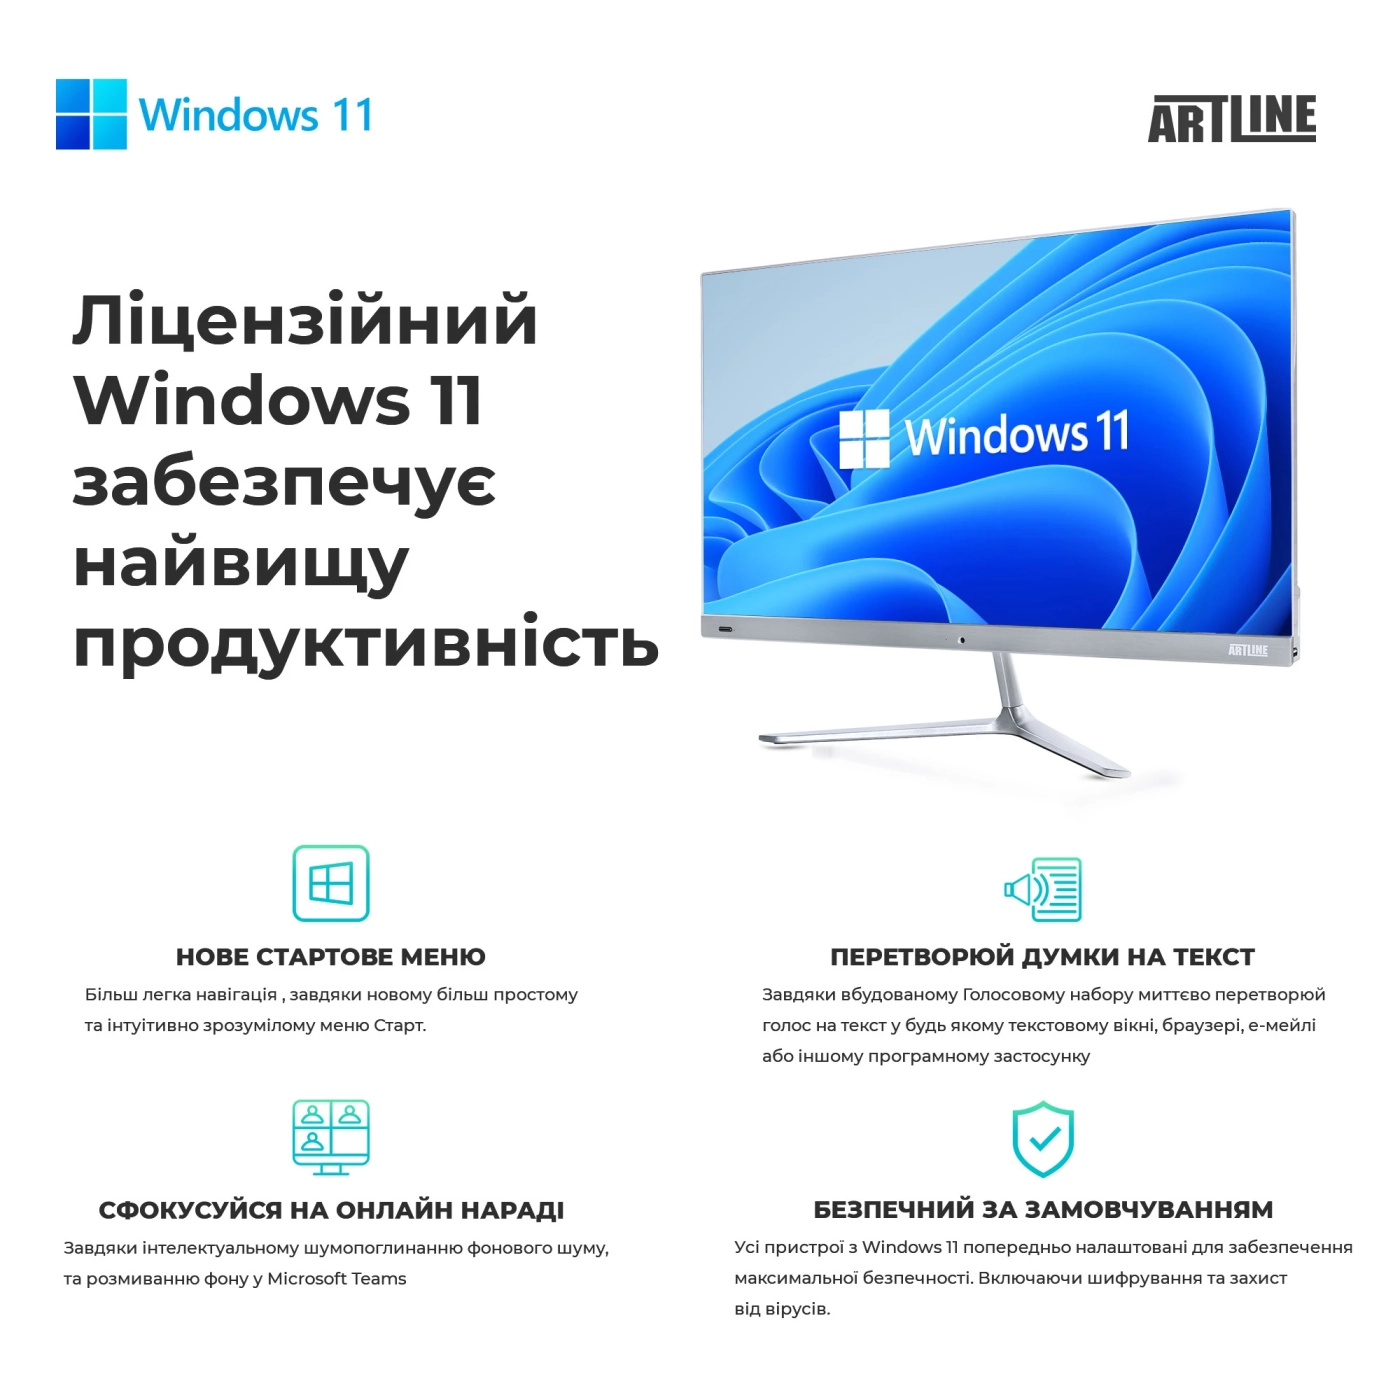 Купить Рабочая станция ARTLINE WorkStation W99 Windows 11 Pro (W99v64Win) - фото 10